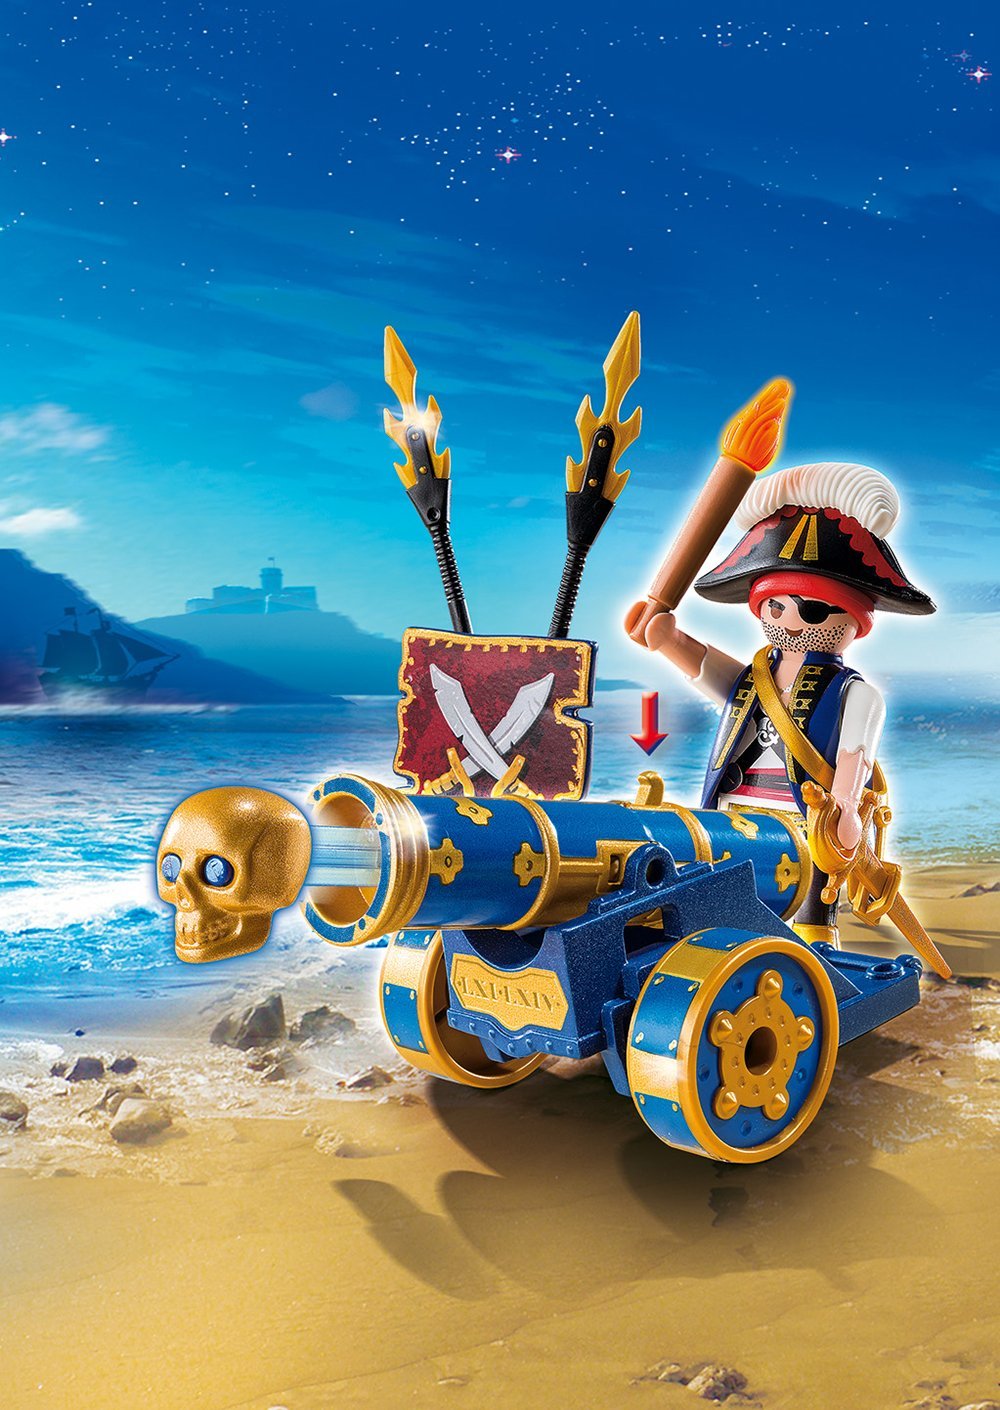 Игровой набор из серии Пираты - Синяя интерактивная пушка с офицером пиратов  